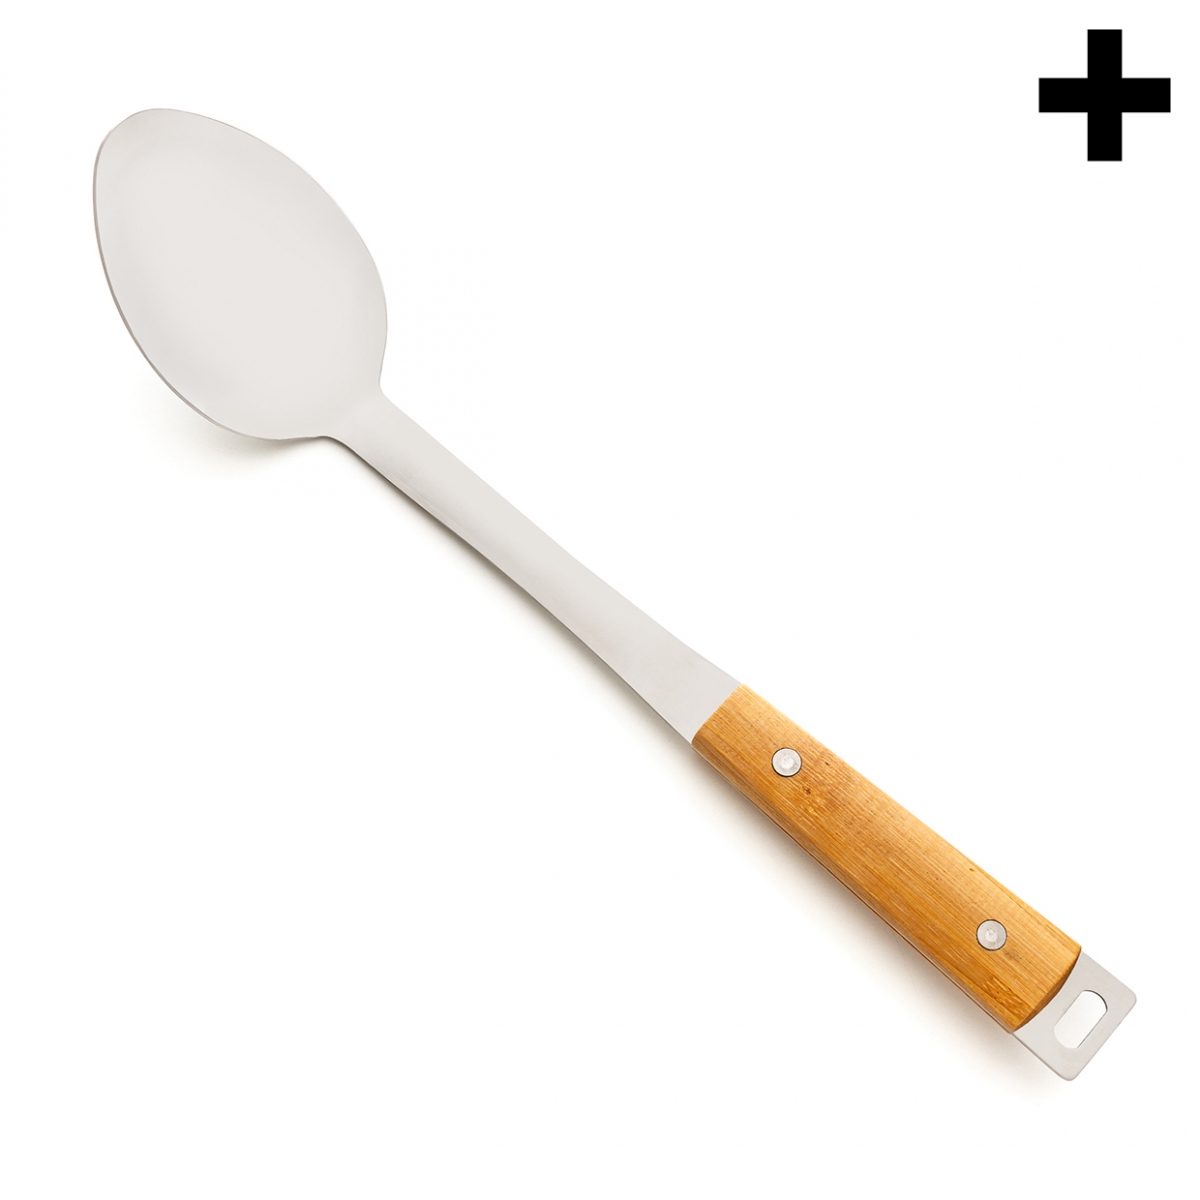 Imagen en la que se ve un cucharón de cocina de metal plateado con mango de madera